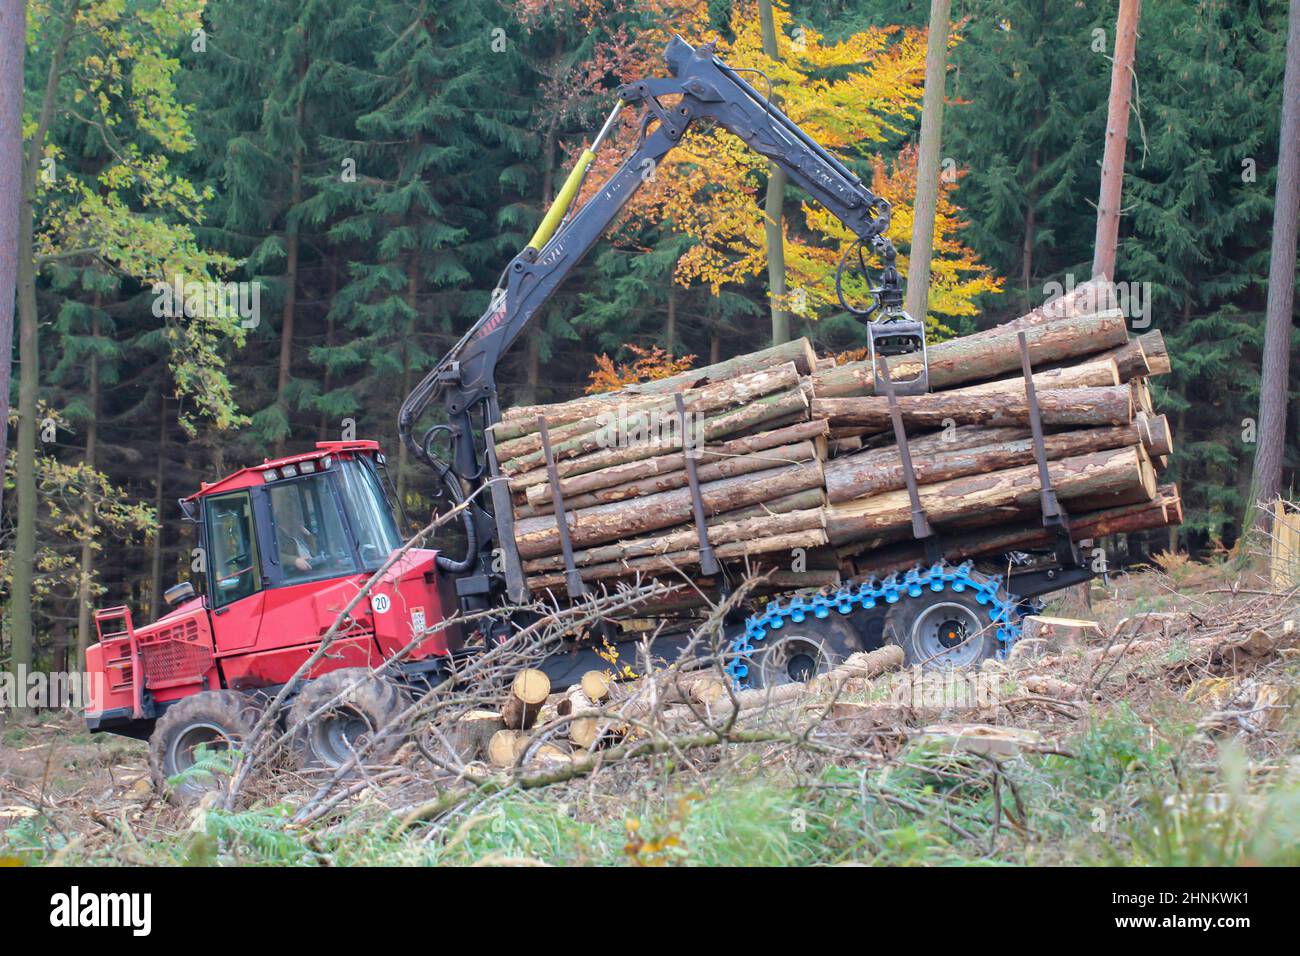 Lavoratori forestali con macchine speciali che raccolgono legno. Vengono caricati trunk ad albero. Foto Stock